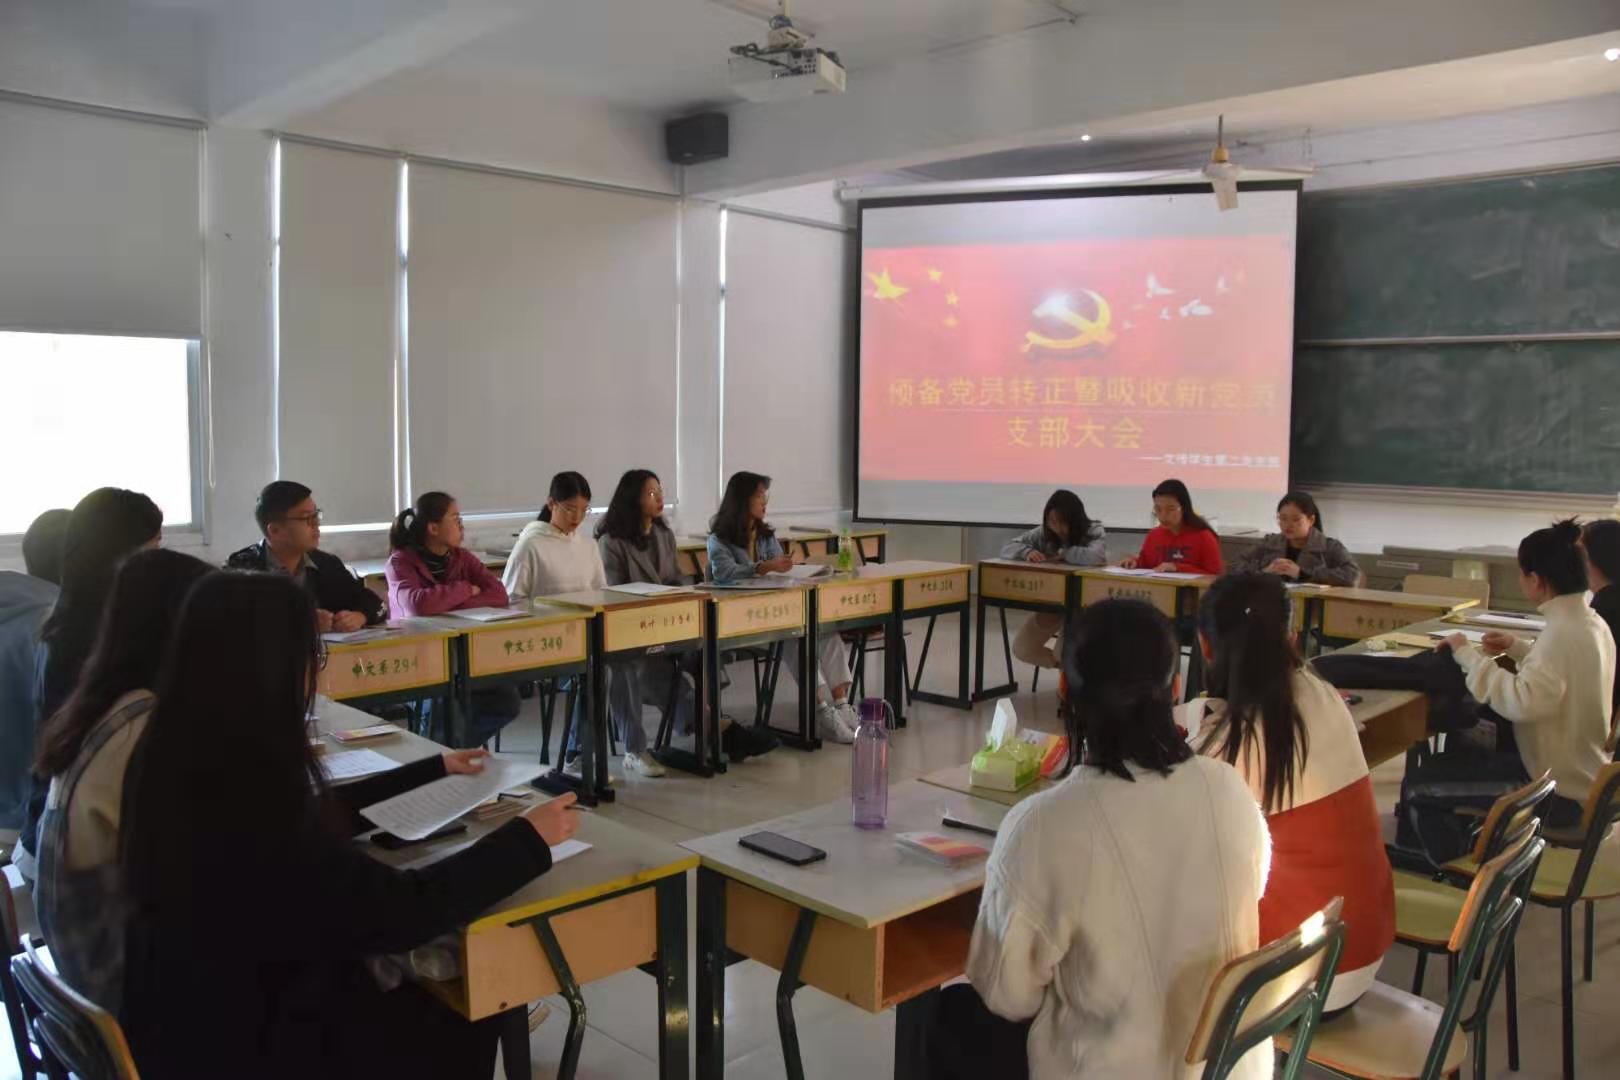 中国共产党新疆师范大学第三届委员会、第三届纪律检查委员会分别举行第一次全体会议